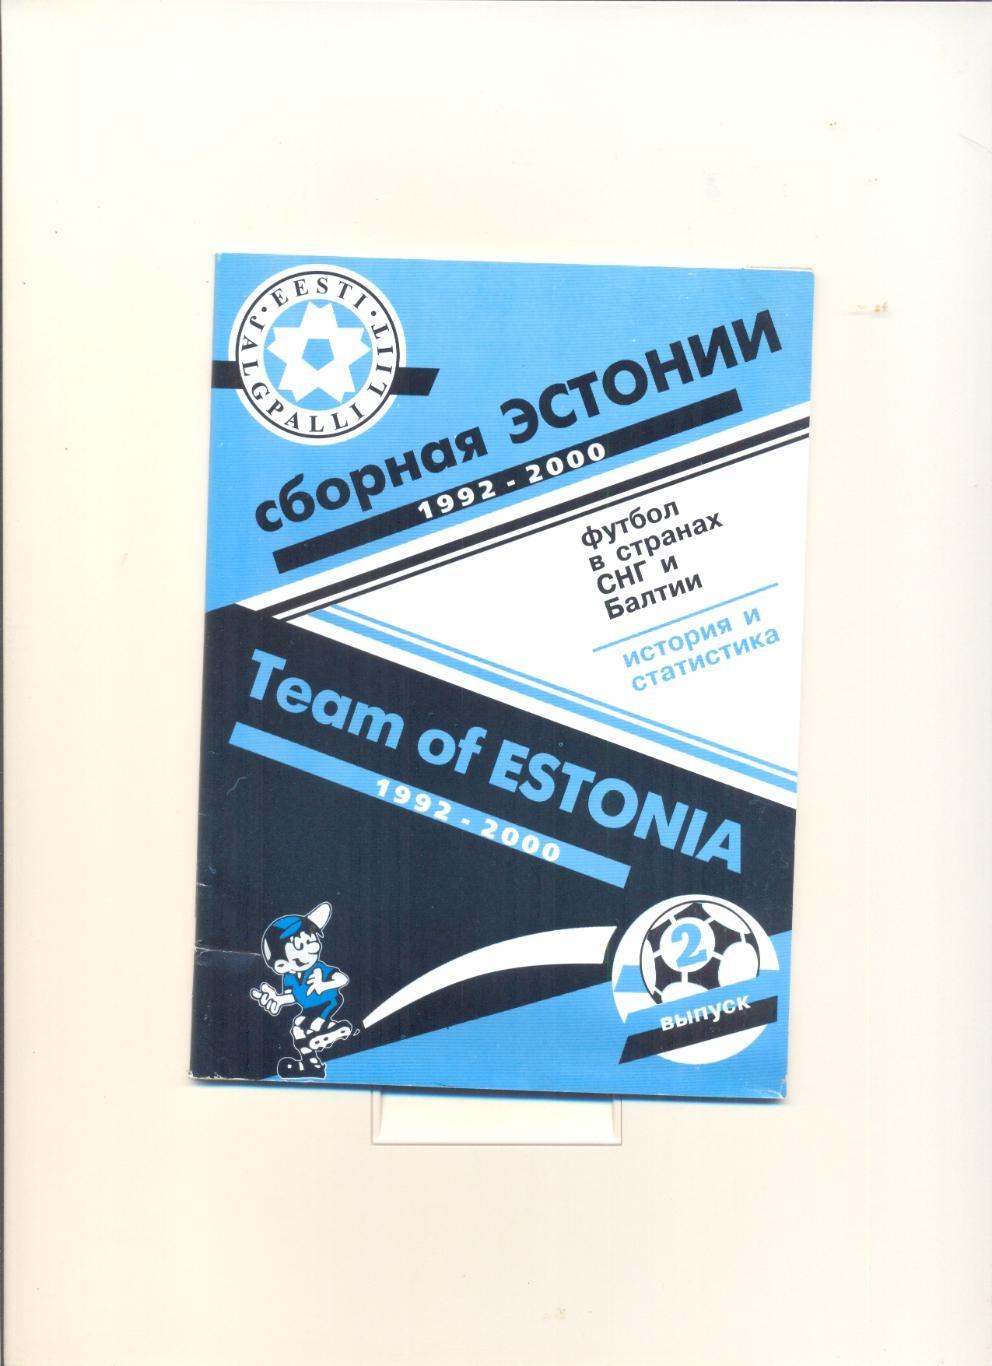 Сборная Эстонии по футболу 1992-2000